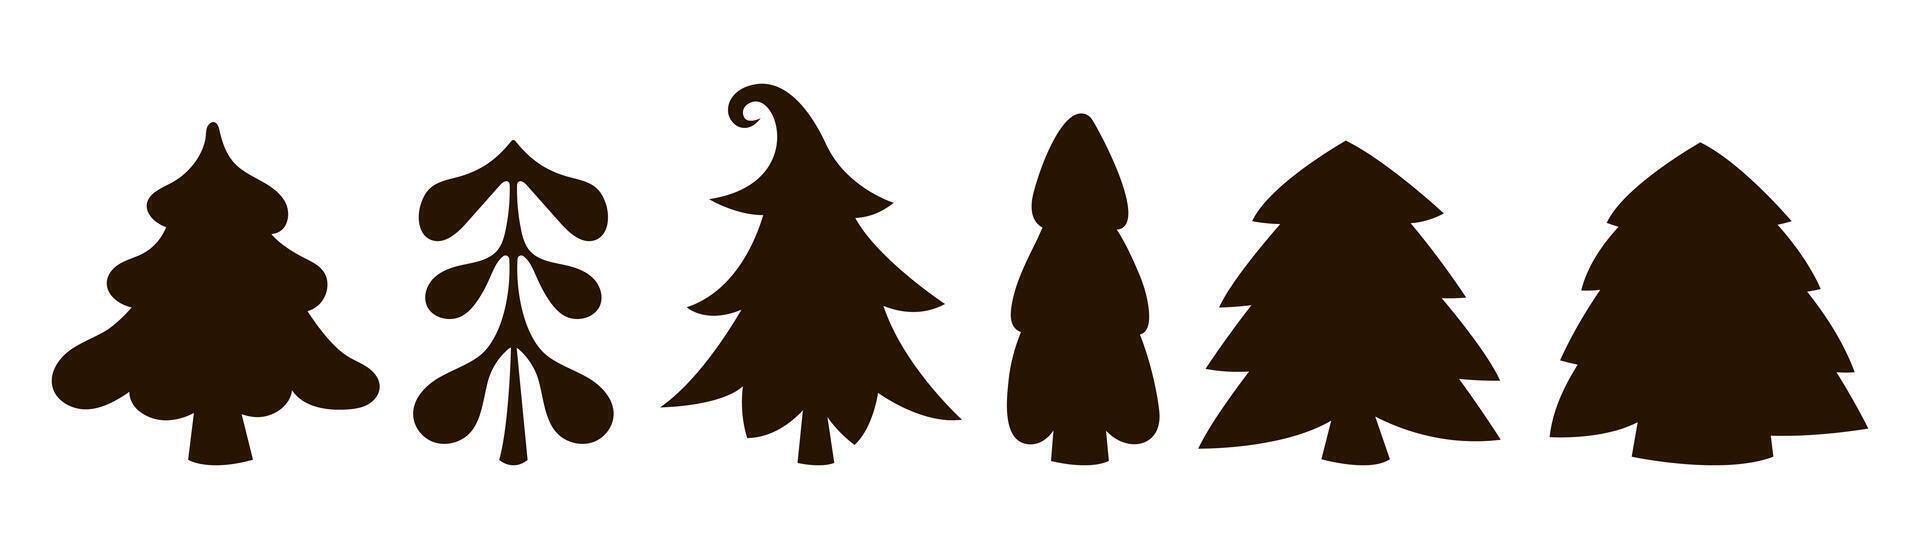 diferente abeto arboles plantilla, silueta. primitivo Navidad arboles de diferente formas gráfico elemento grupo. vector